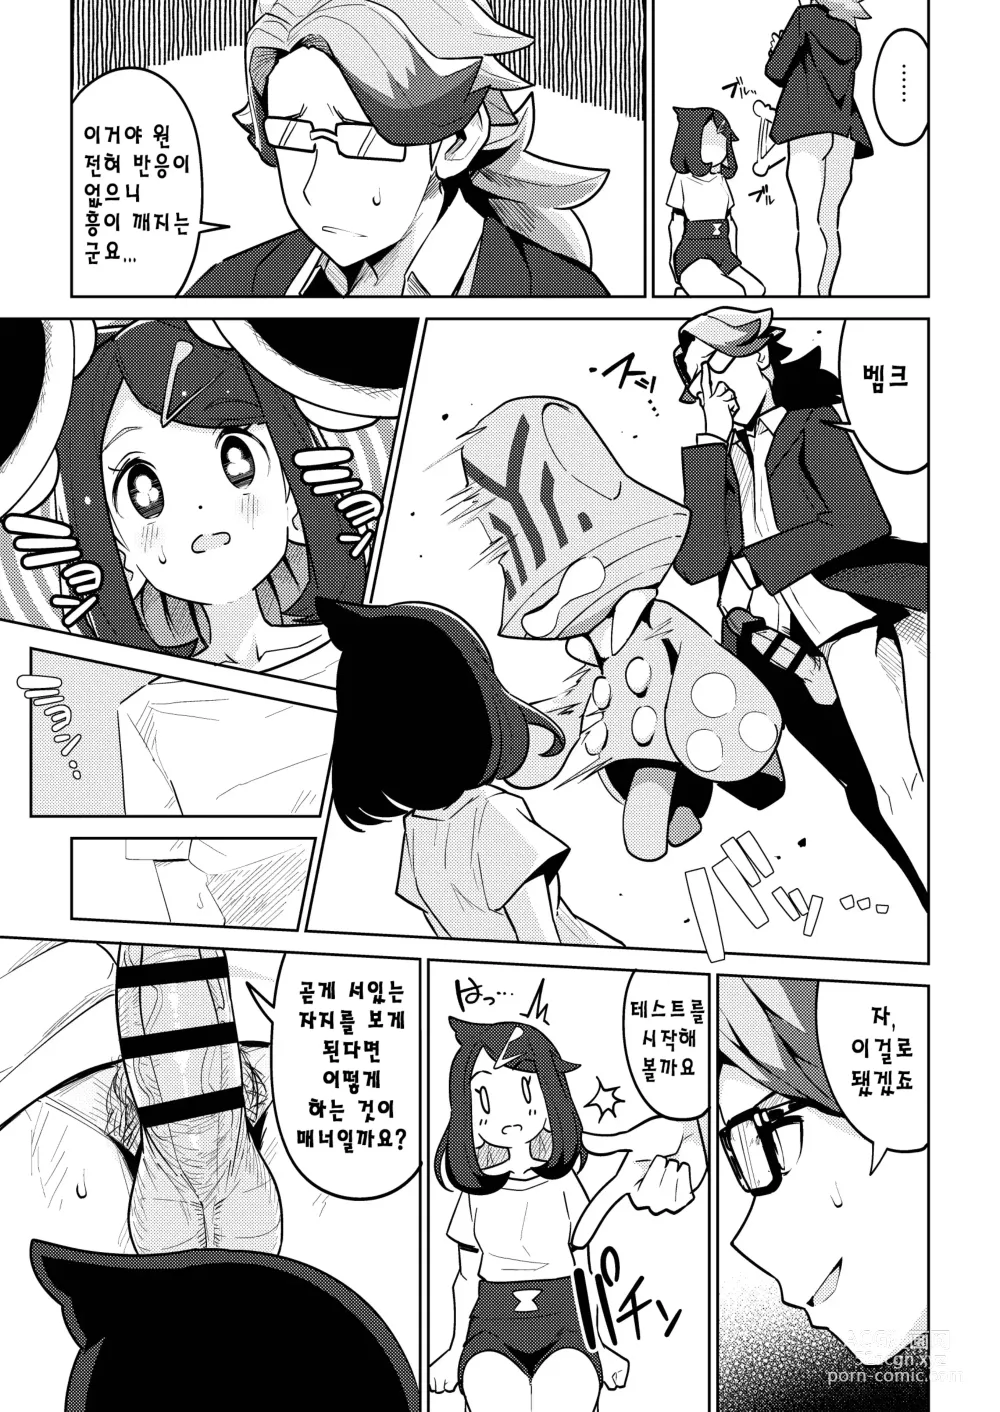 Page 6 of doujinshi 사이코파워라는건 대체 뭐죠?